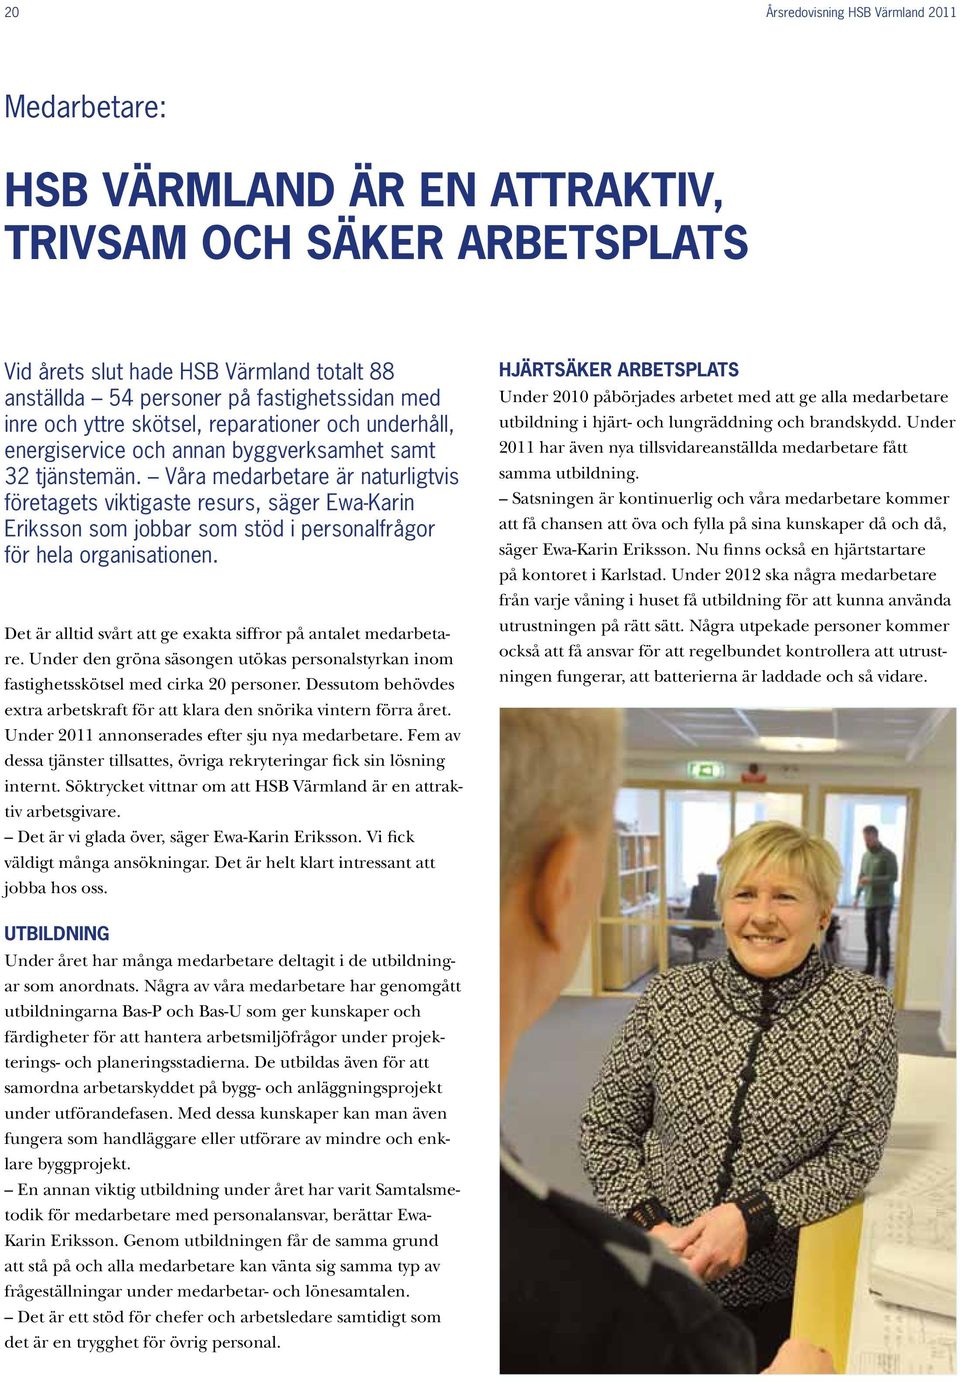 Våra medarbetare är naturligtvis företagets viktigaste resurs, säger Ewa-Karin Eriksson som jobbar som stöd i personalfrågor för hela organisationen.